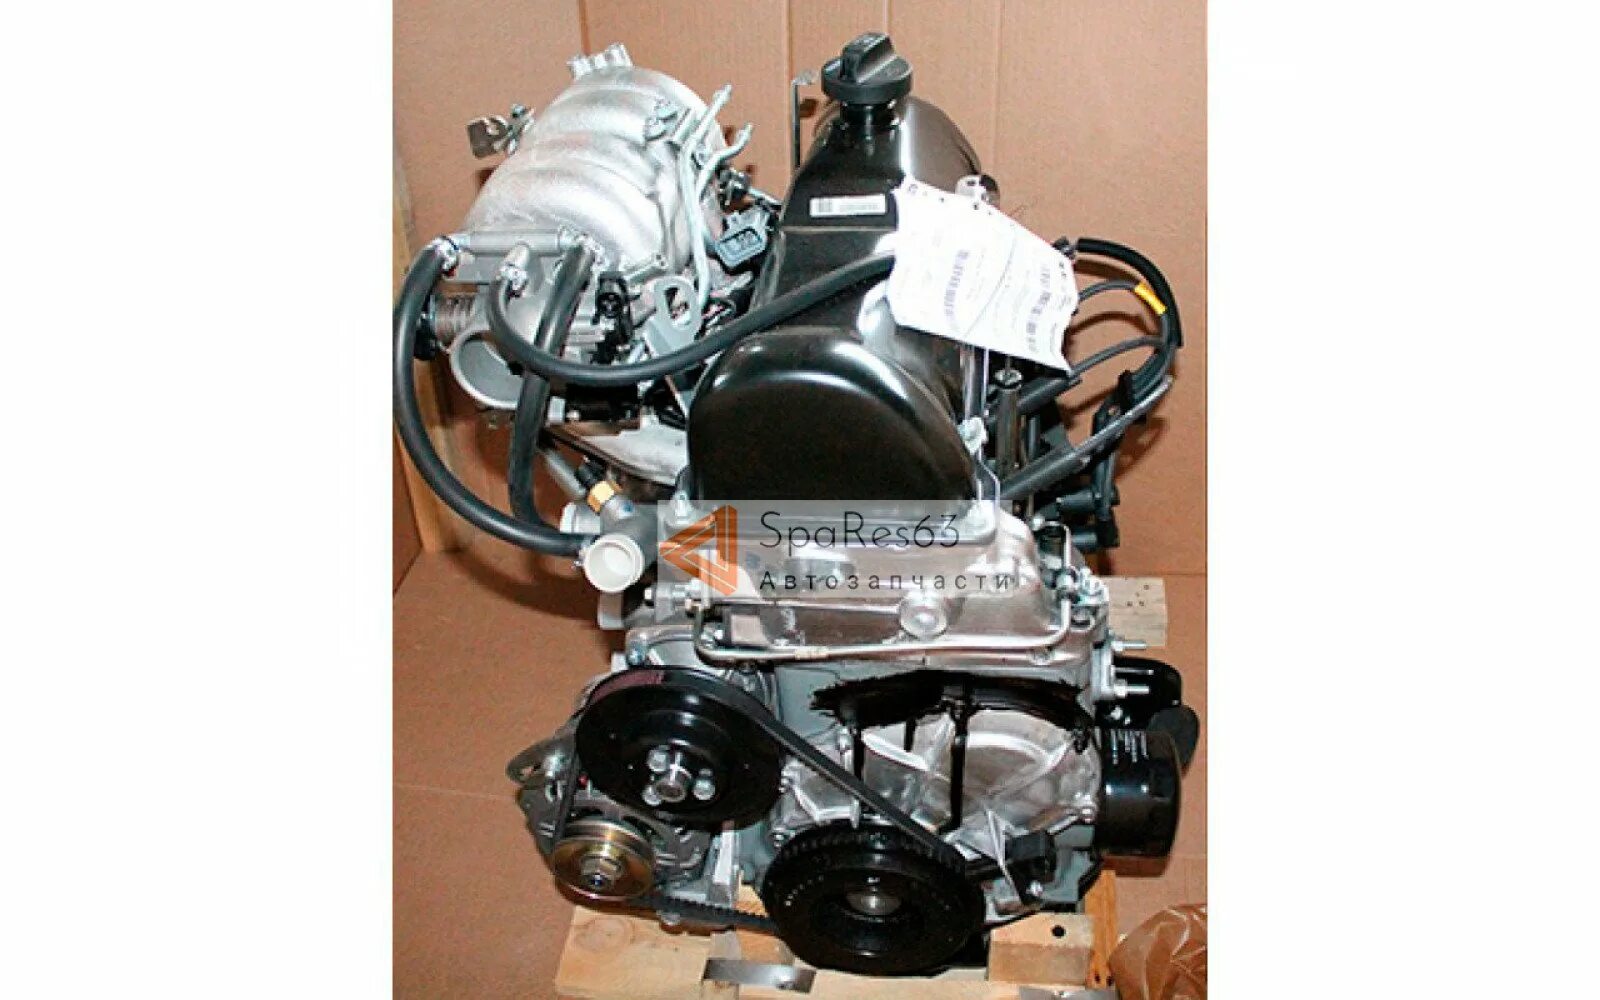 Двигатель нива 1.7 купить новый. Двигатель ВАЗ 21214. Движок на ВАЗ 21214. Двигатель Нива ВАЗ 21214. Двигатель Нива 21214 инжектор 1.7.